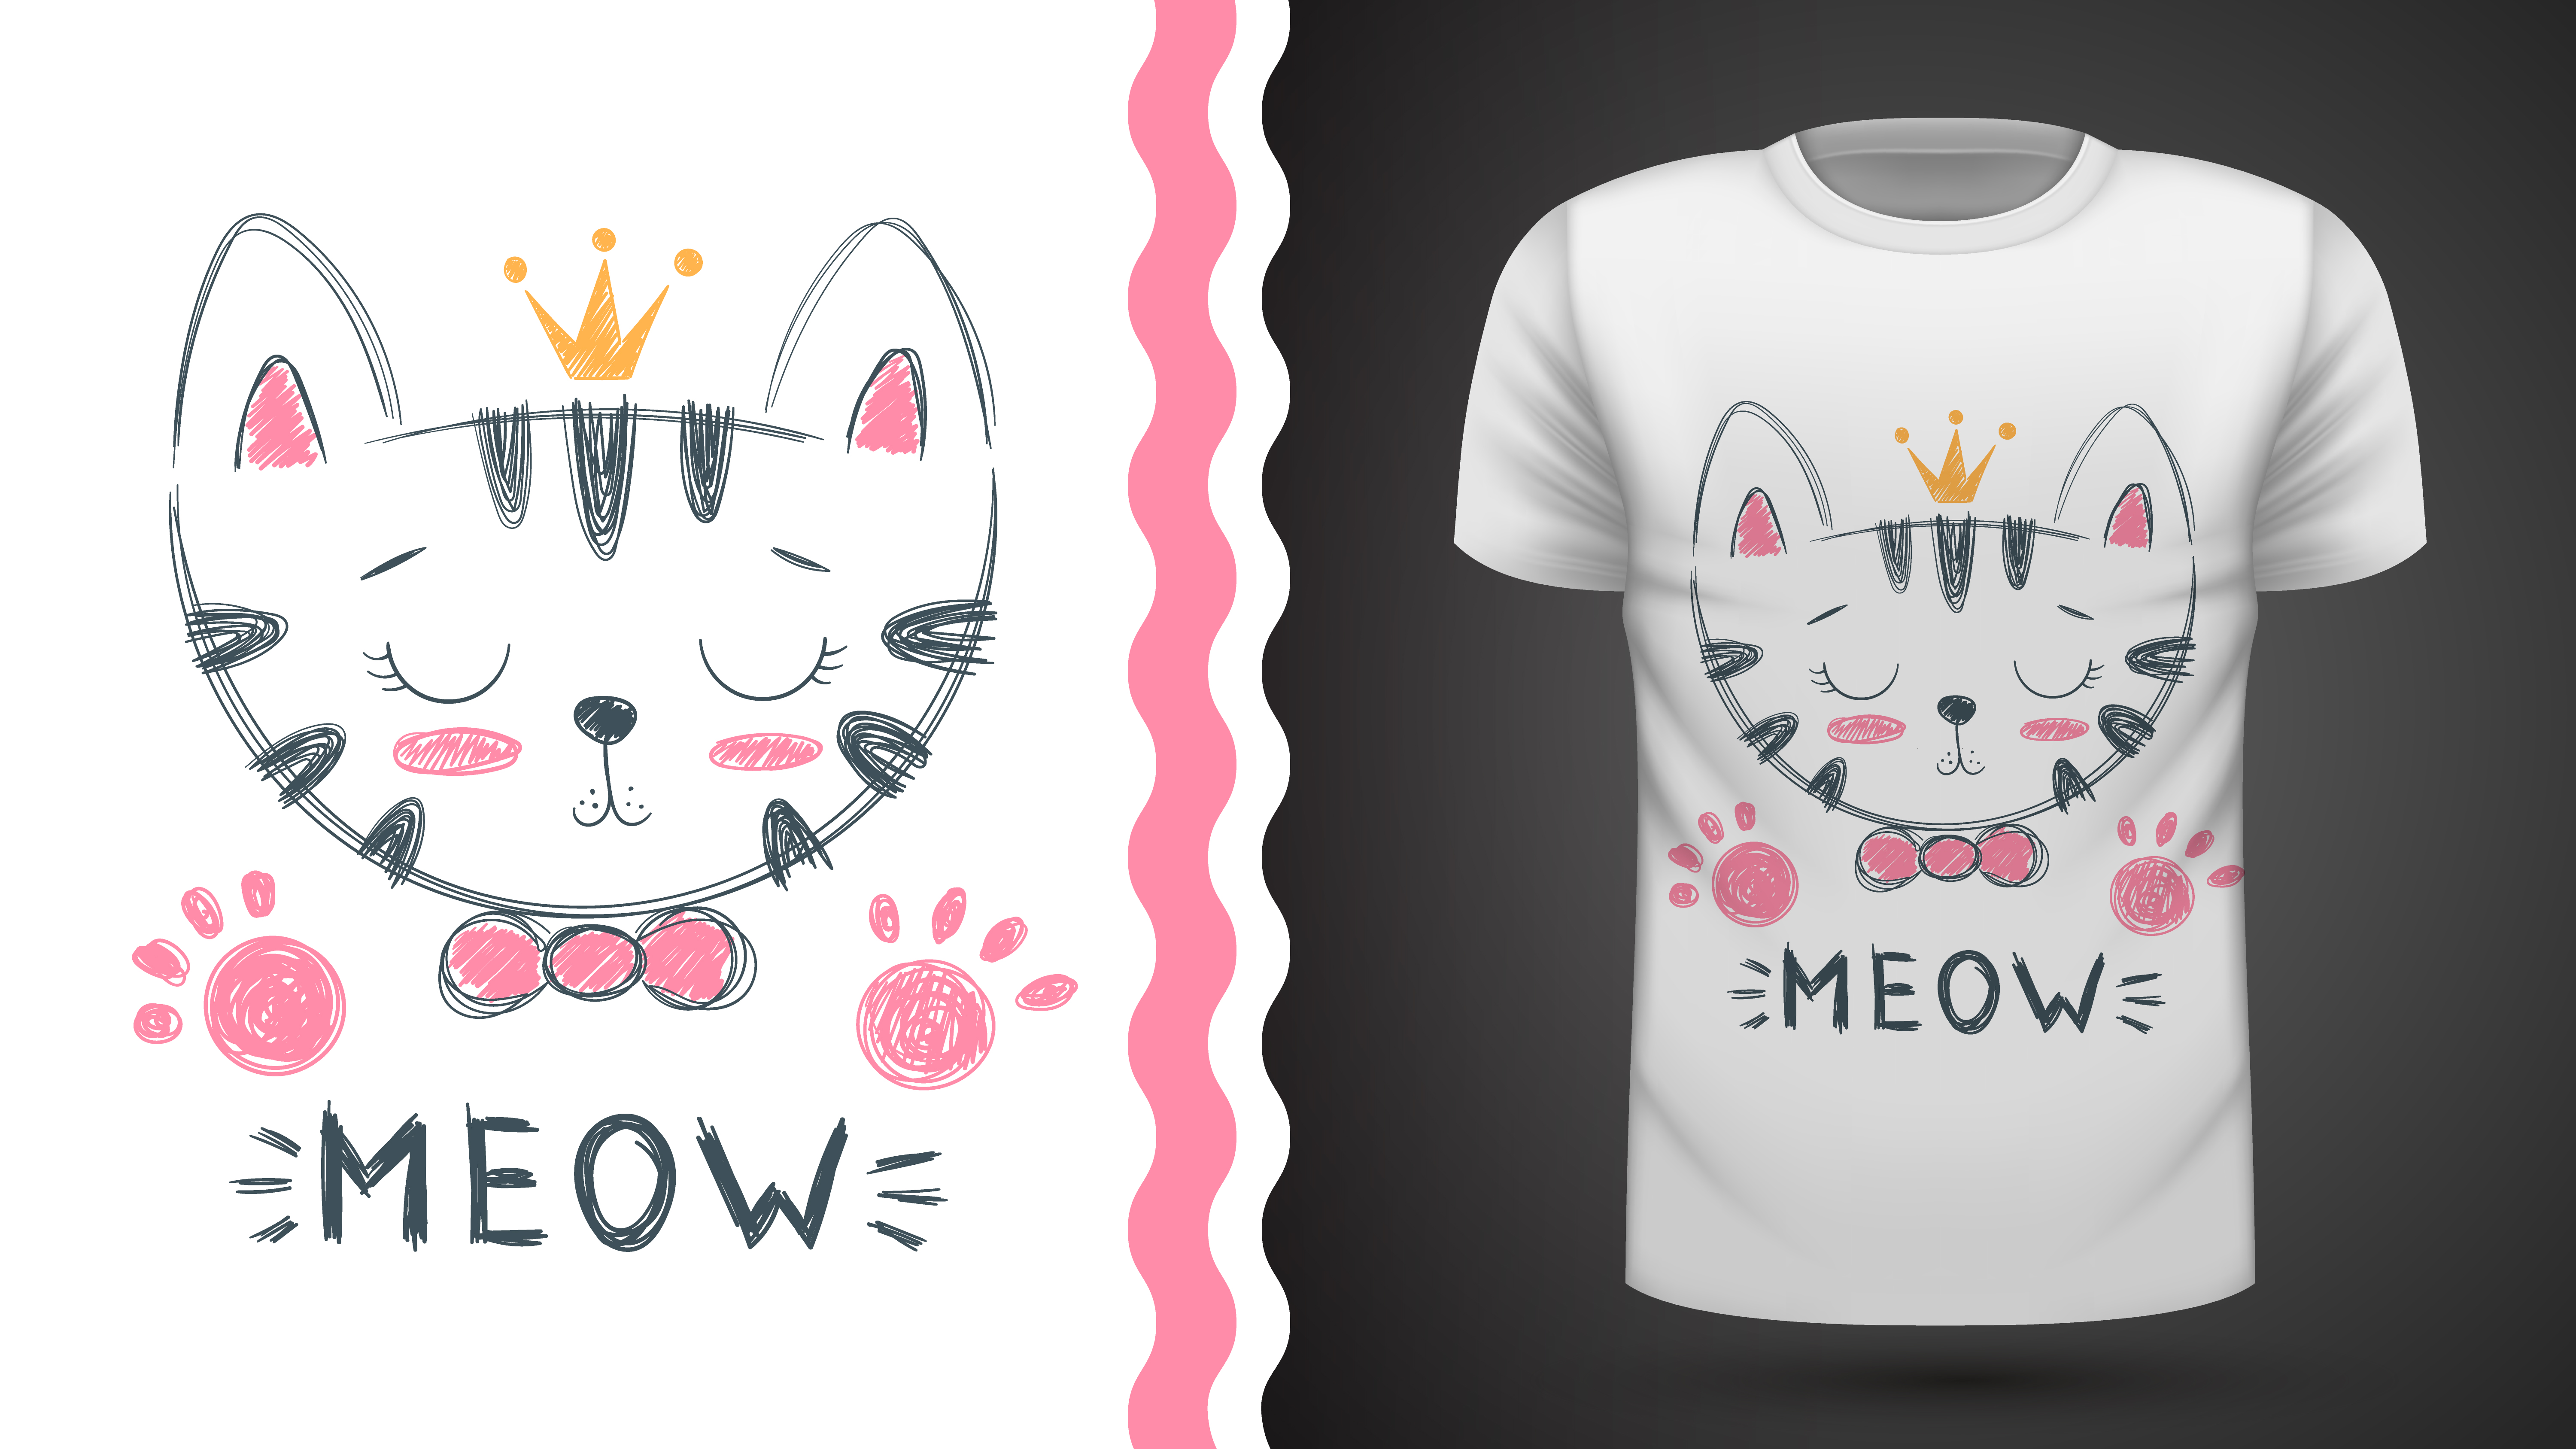 Little meow тг. Кошка на футболке рисунок. Кот в футболке вектор. Милый котик на футболку нарисованный. Принт на футболке кошка на булавке.